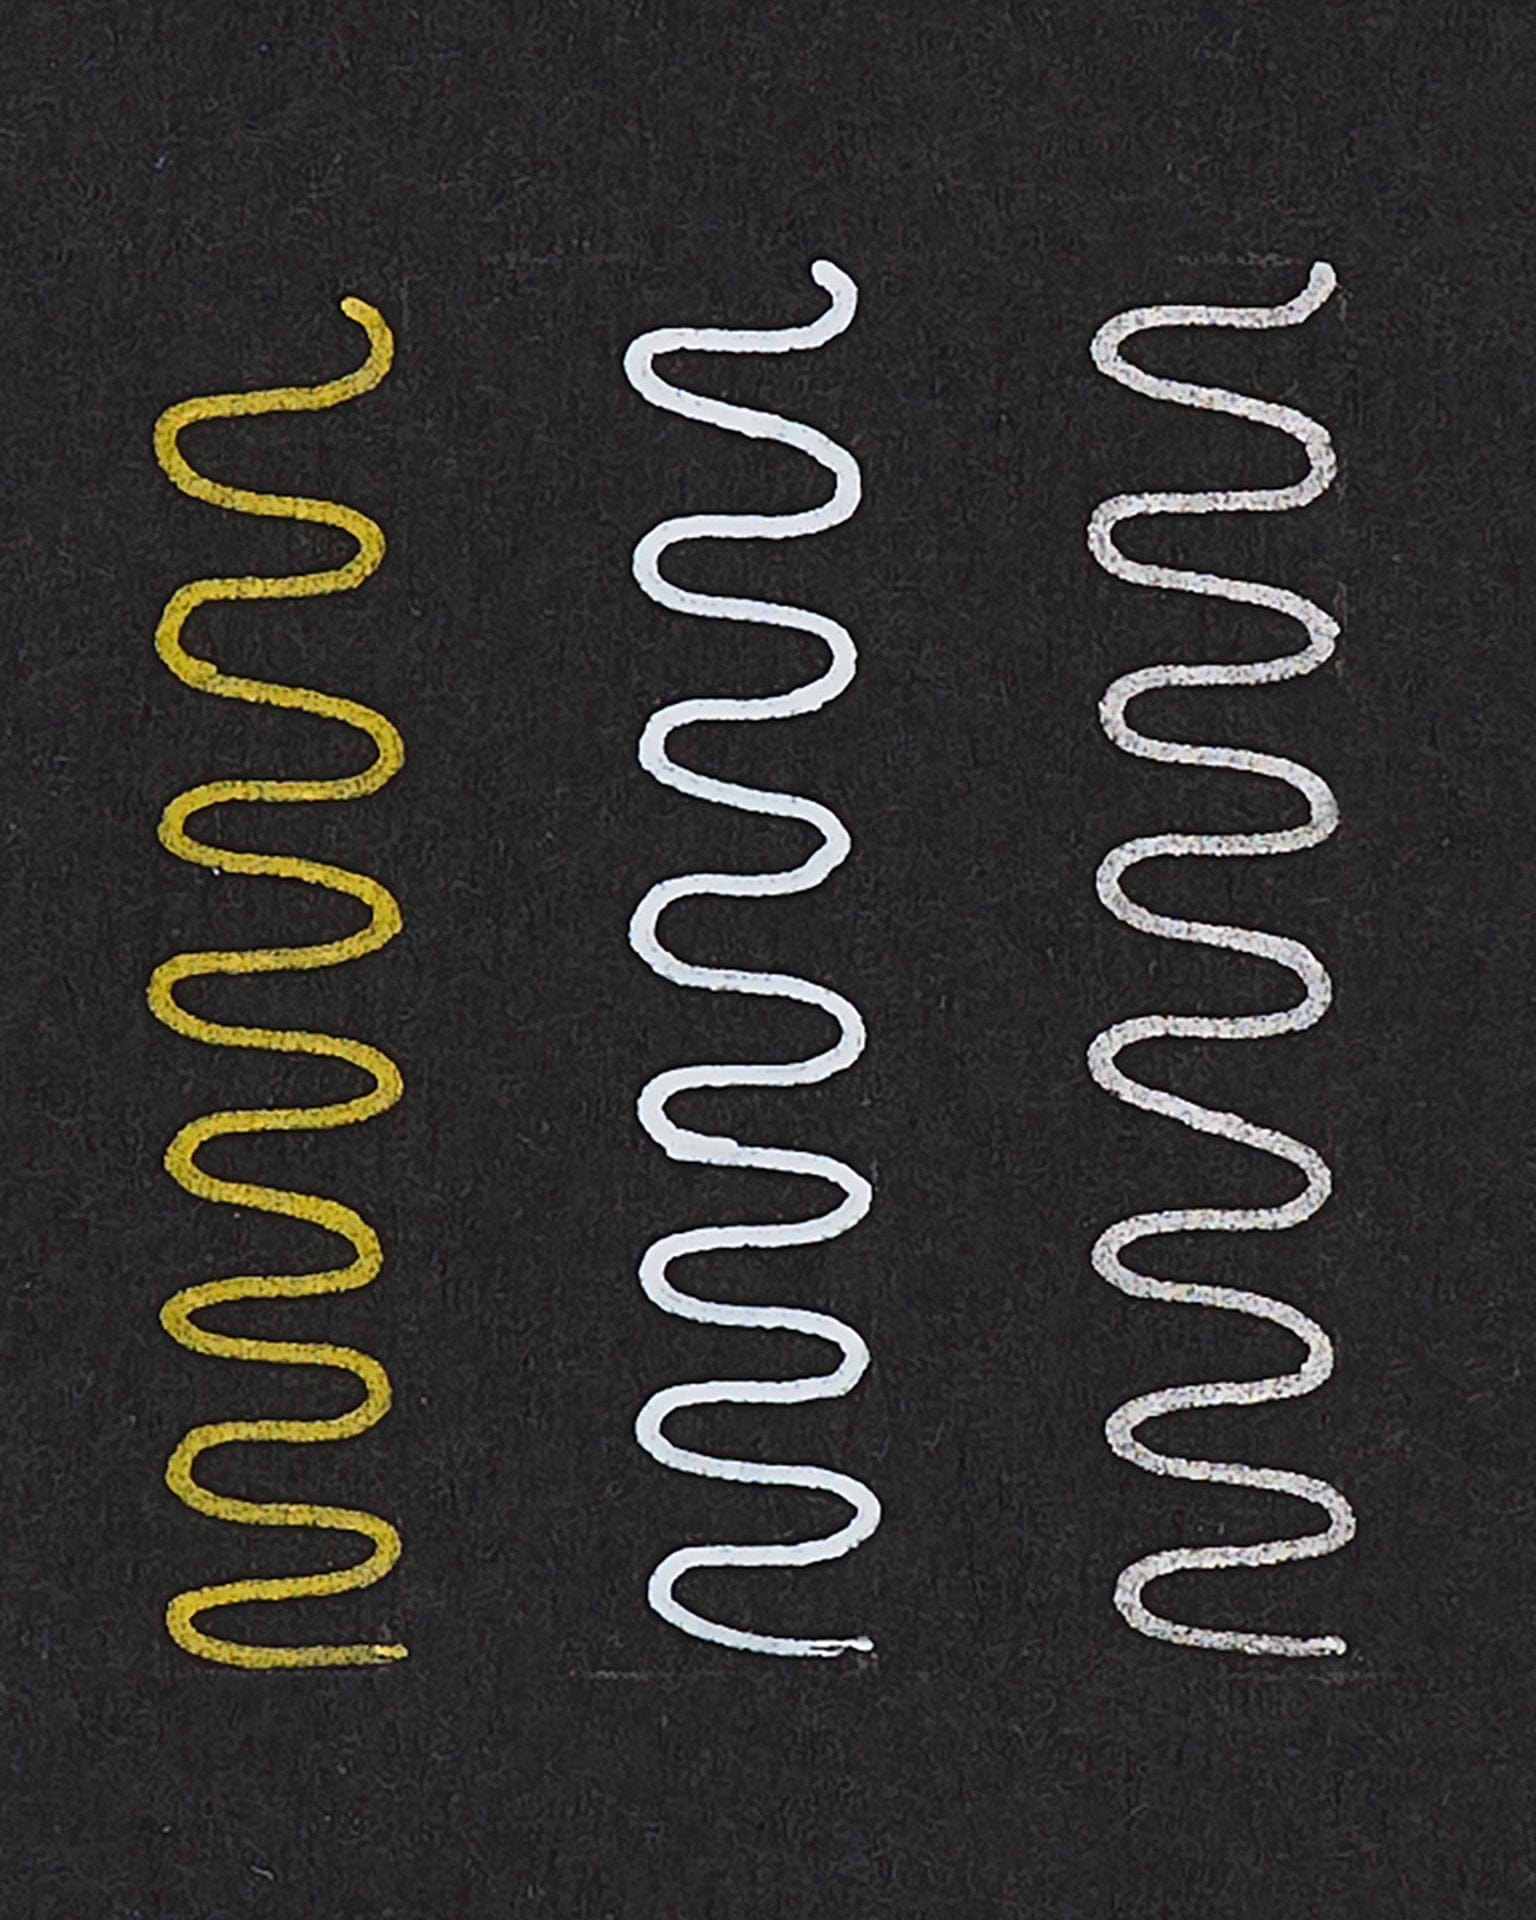 Ooly Modern Gel Pens – Set of 3